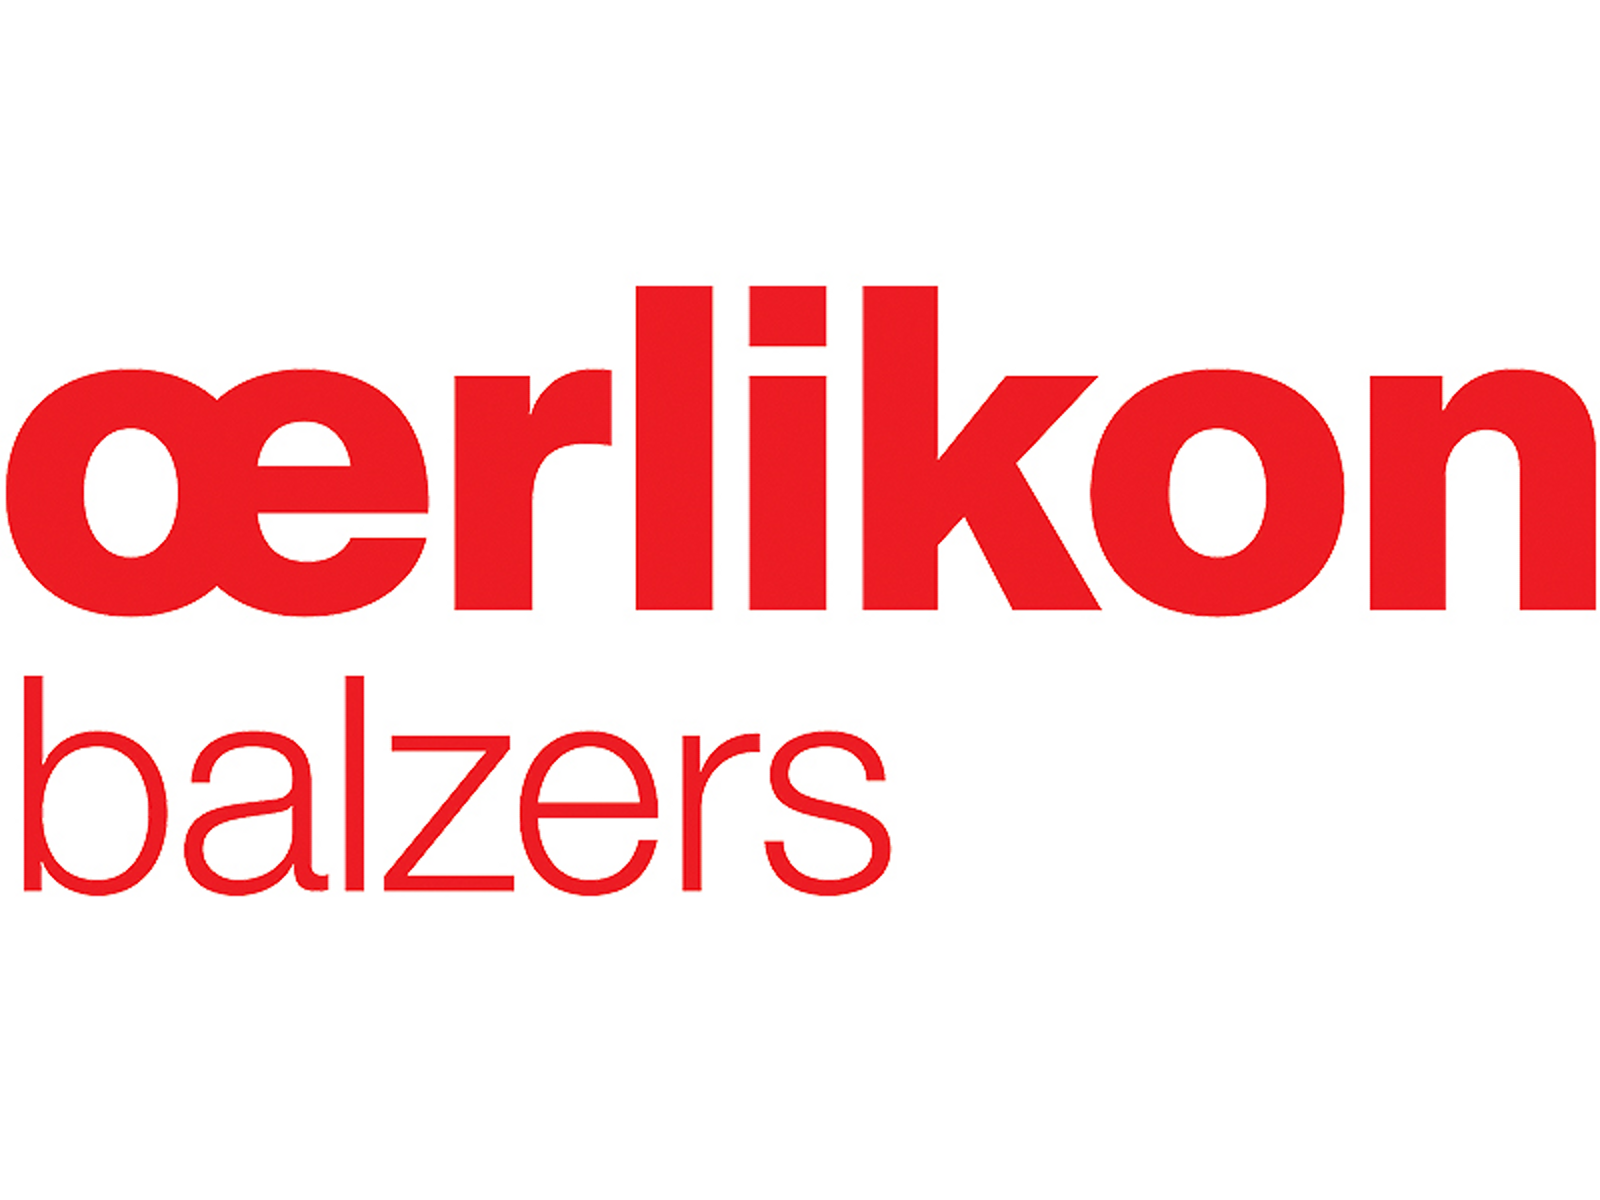 Oerlikon Balzers logo